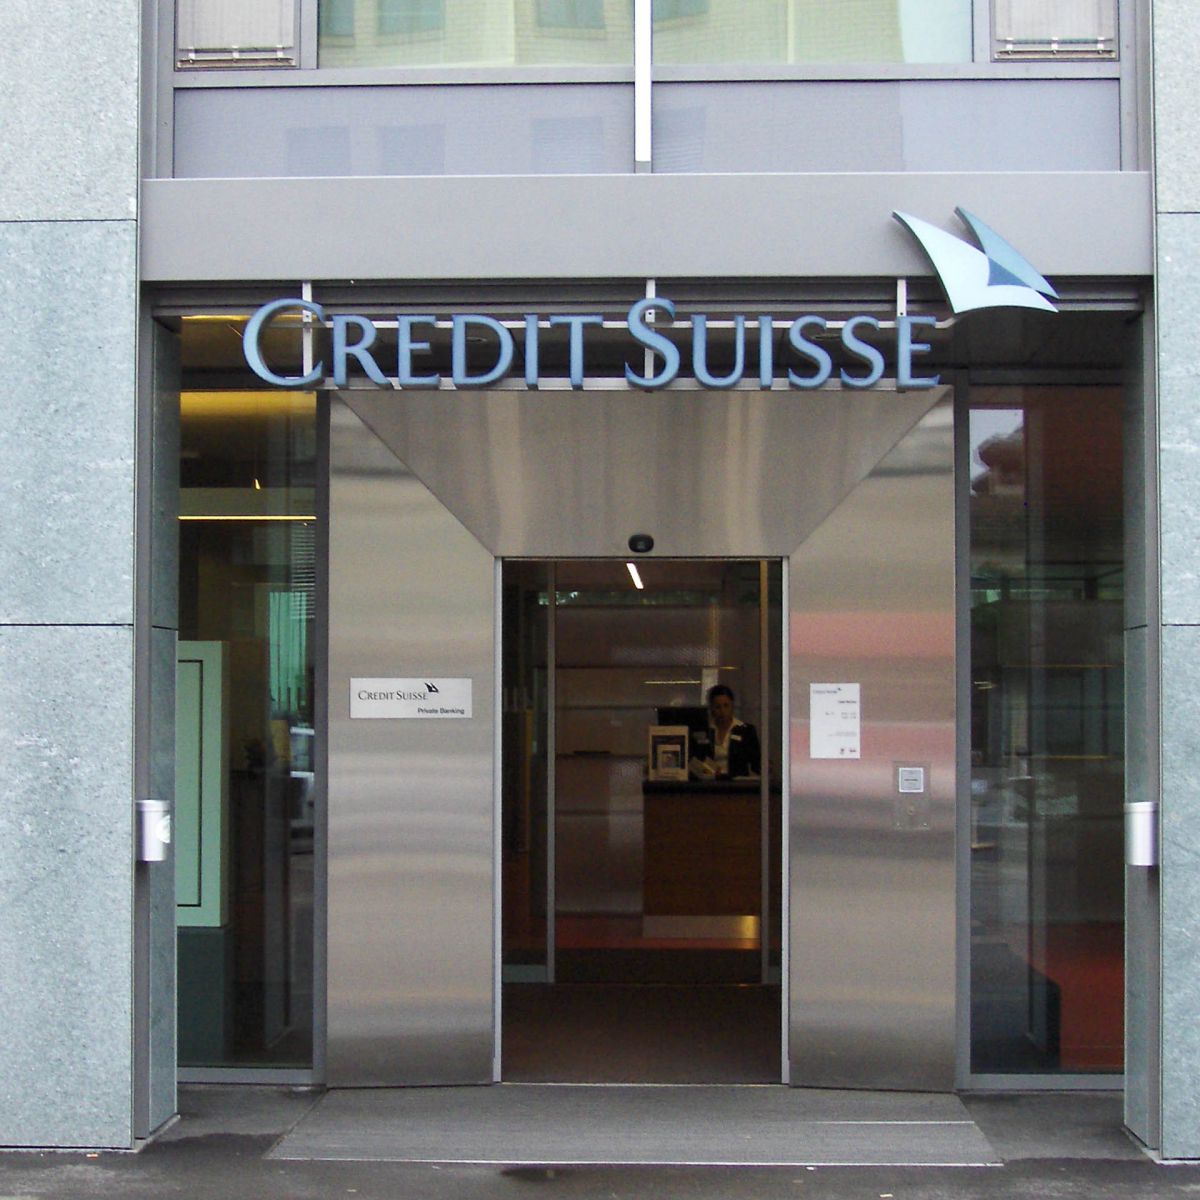 Credit Suisse Bülach